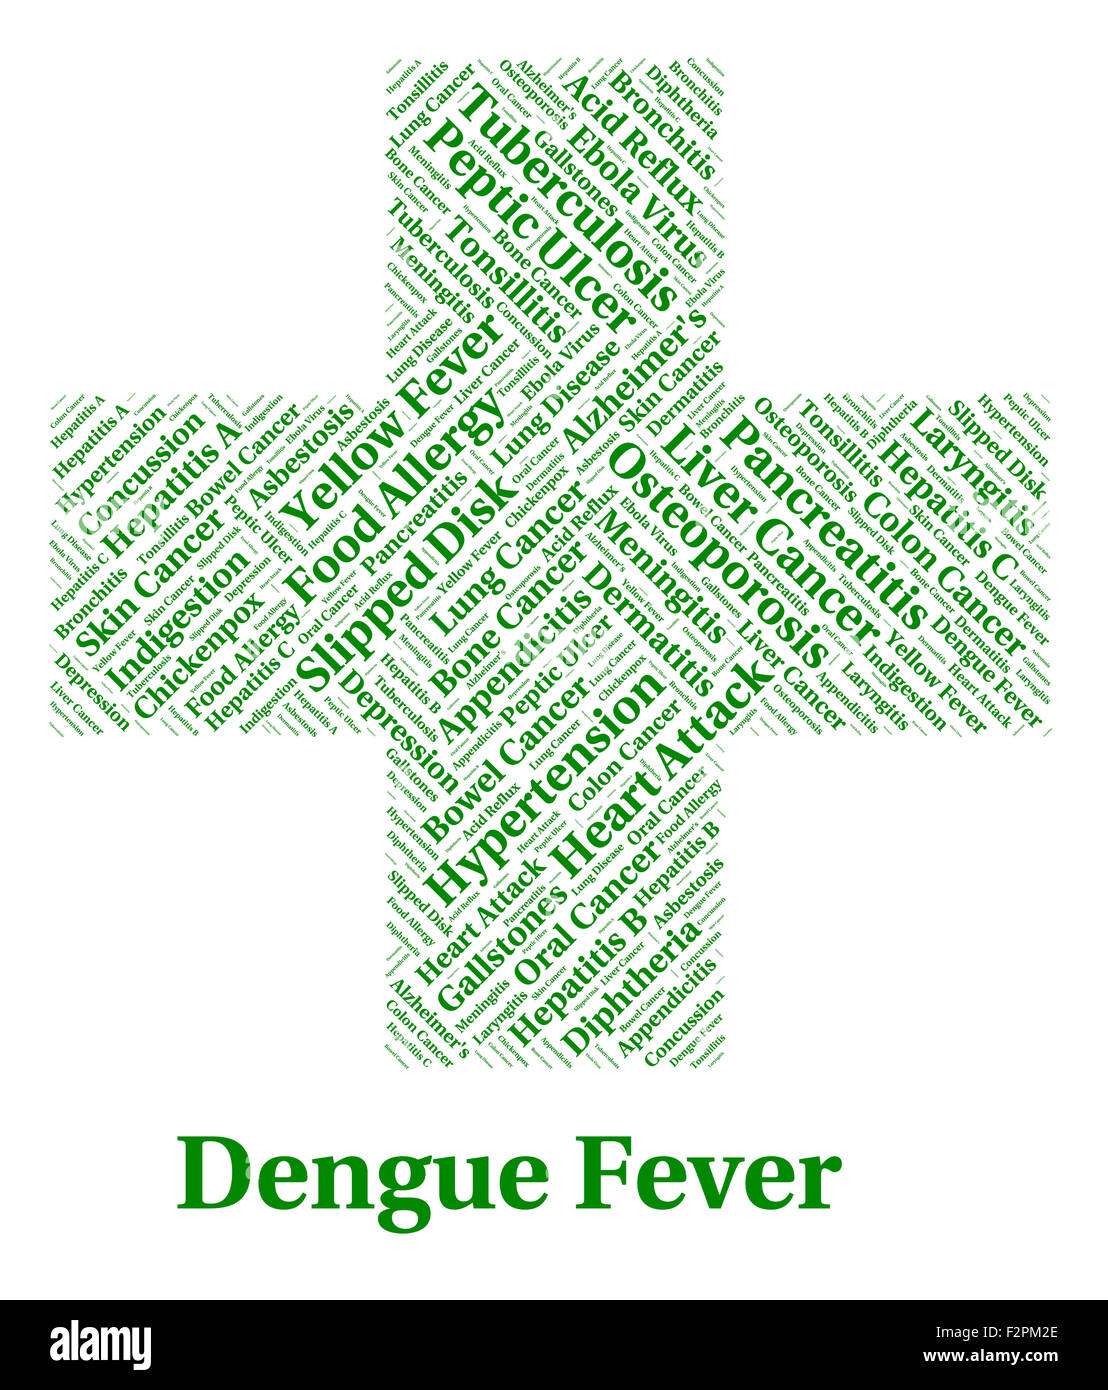 Dengue Fever Showing Burning Up And Malady Stock Photo